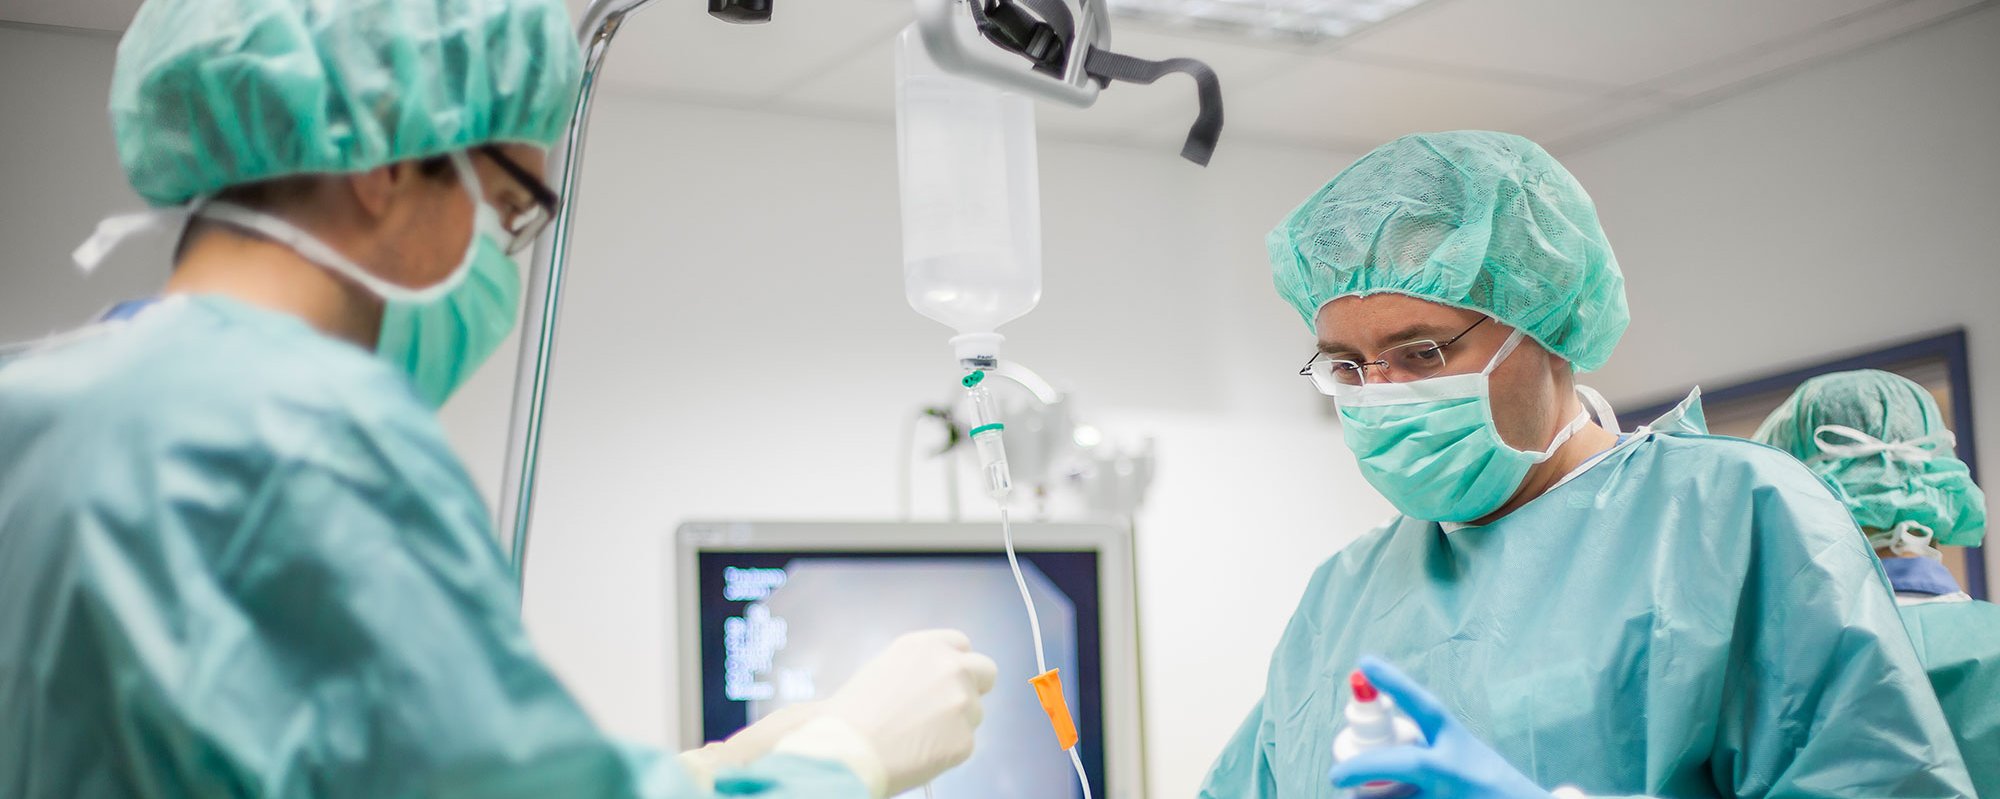 Chirurgischer Eingriff im Kompetenzzentrum für minimal invasive Chirurgie